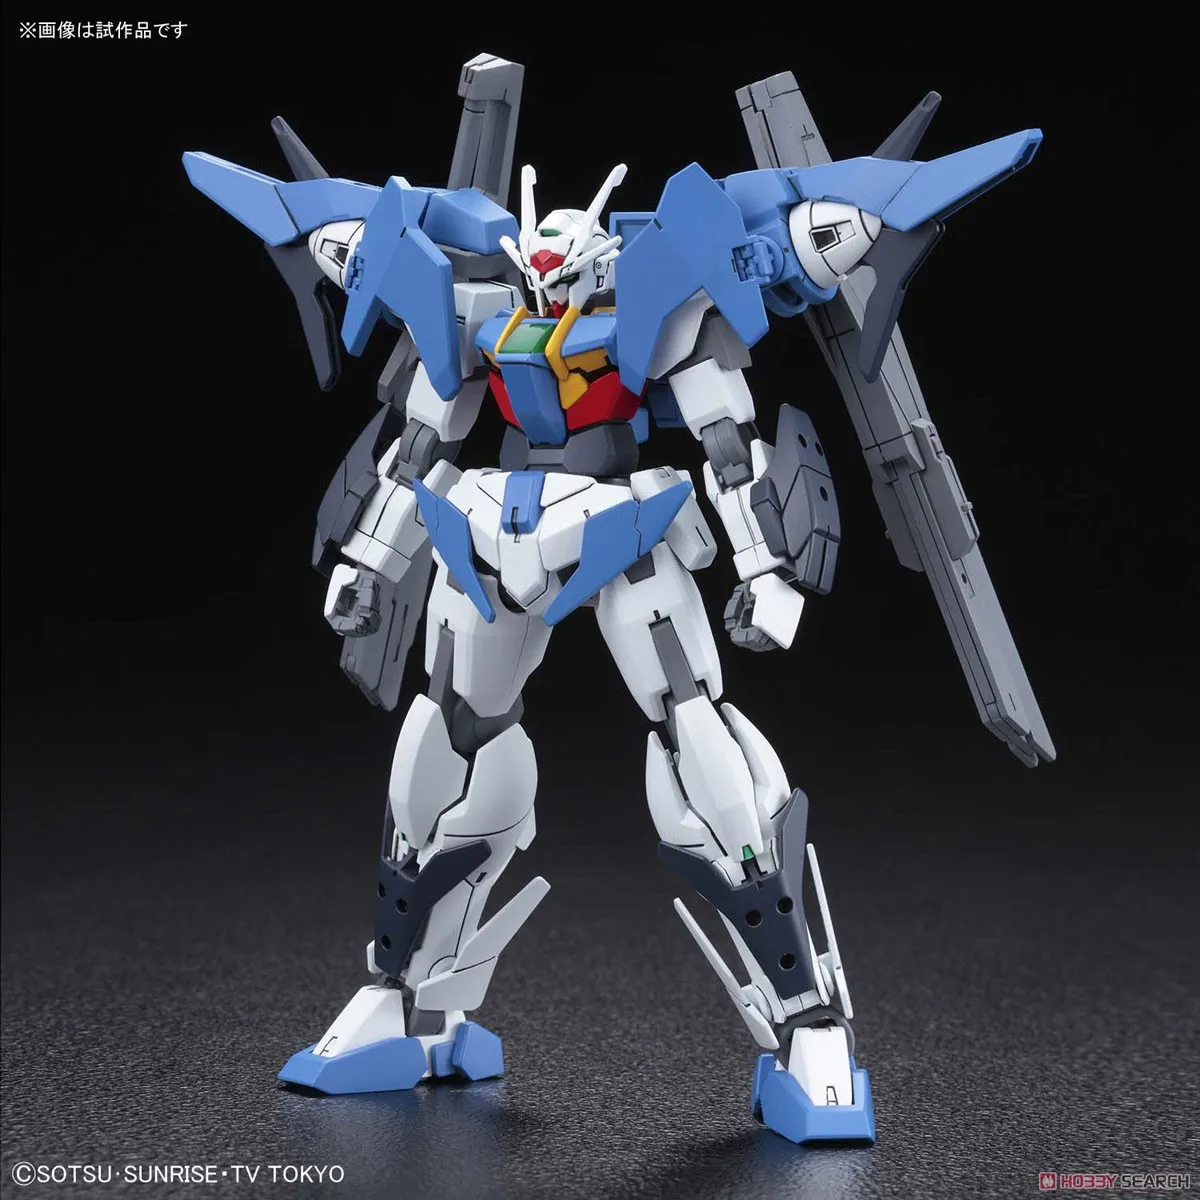 Bandai Gundam 1/144 HGBD Gundam 00 Sky Сборная модель наборы фигурки пластмассовые игрушечные модели